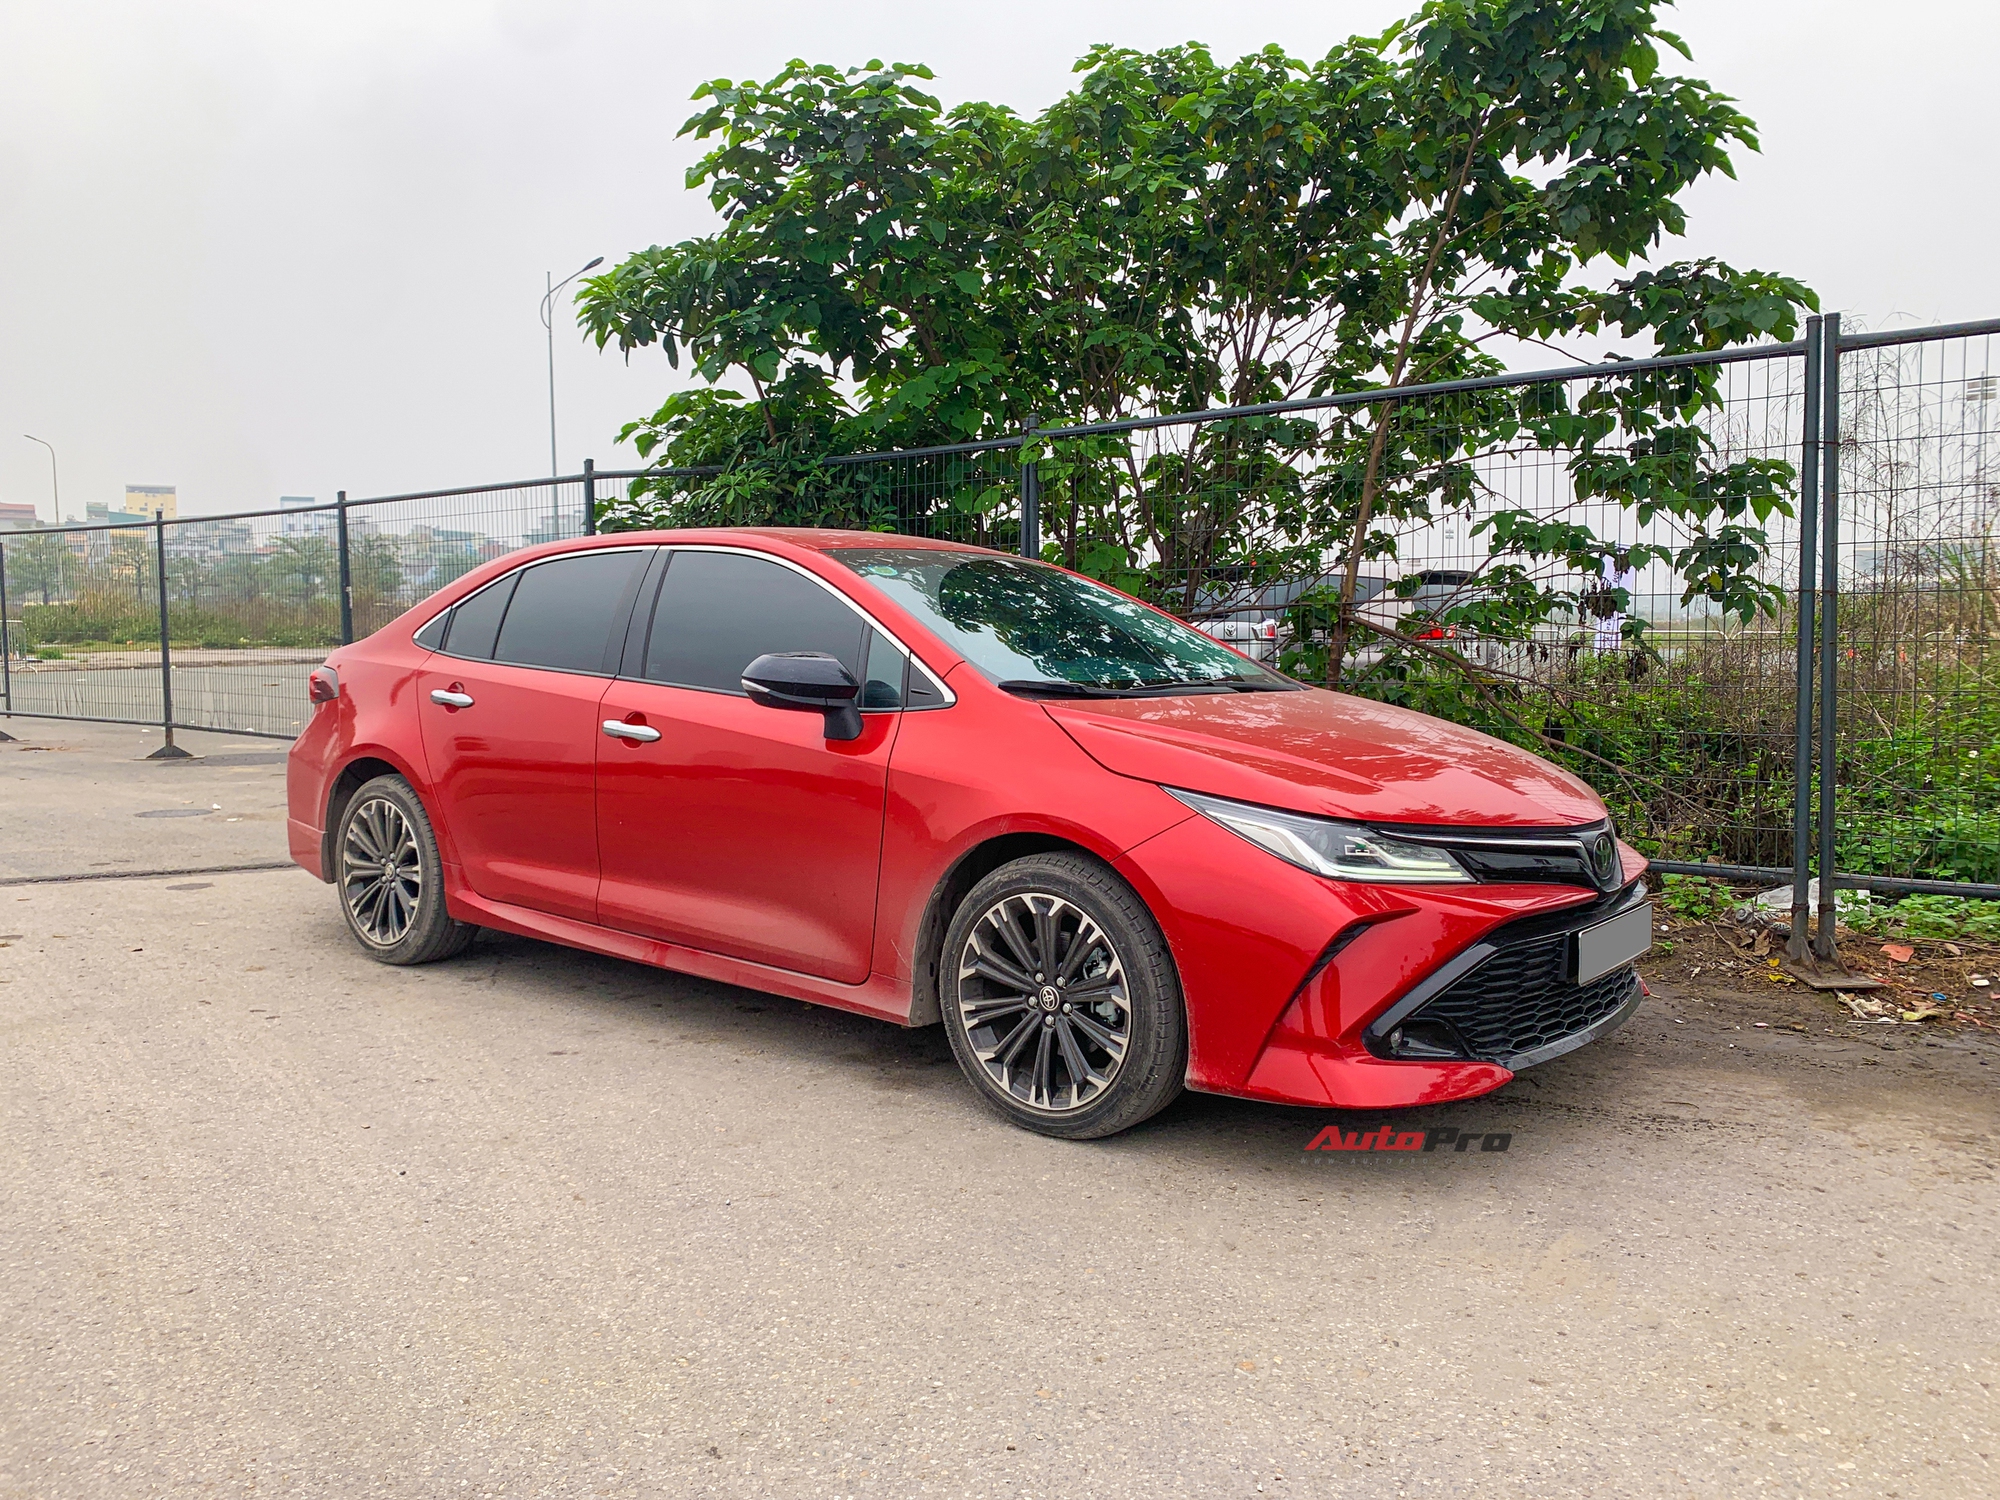 Toyota Corolla Altis GR Sport đầu tiên xuất hiện tại Việt Nam: Ngoại hình hầm hố khác hẳn phong cách ‘doanh nhân’, đấu Civic RS- Ảnh 1.